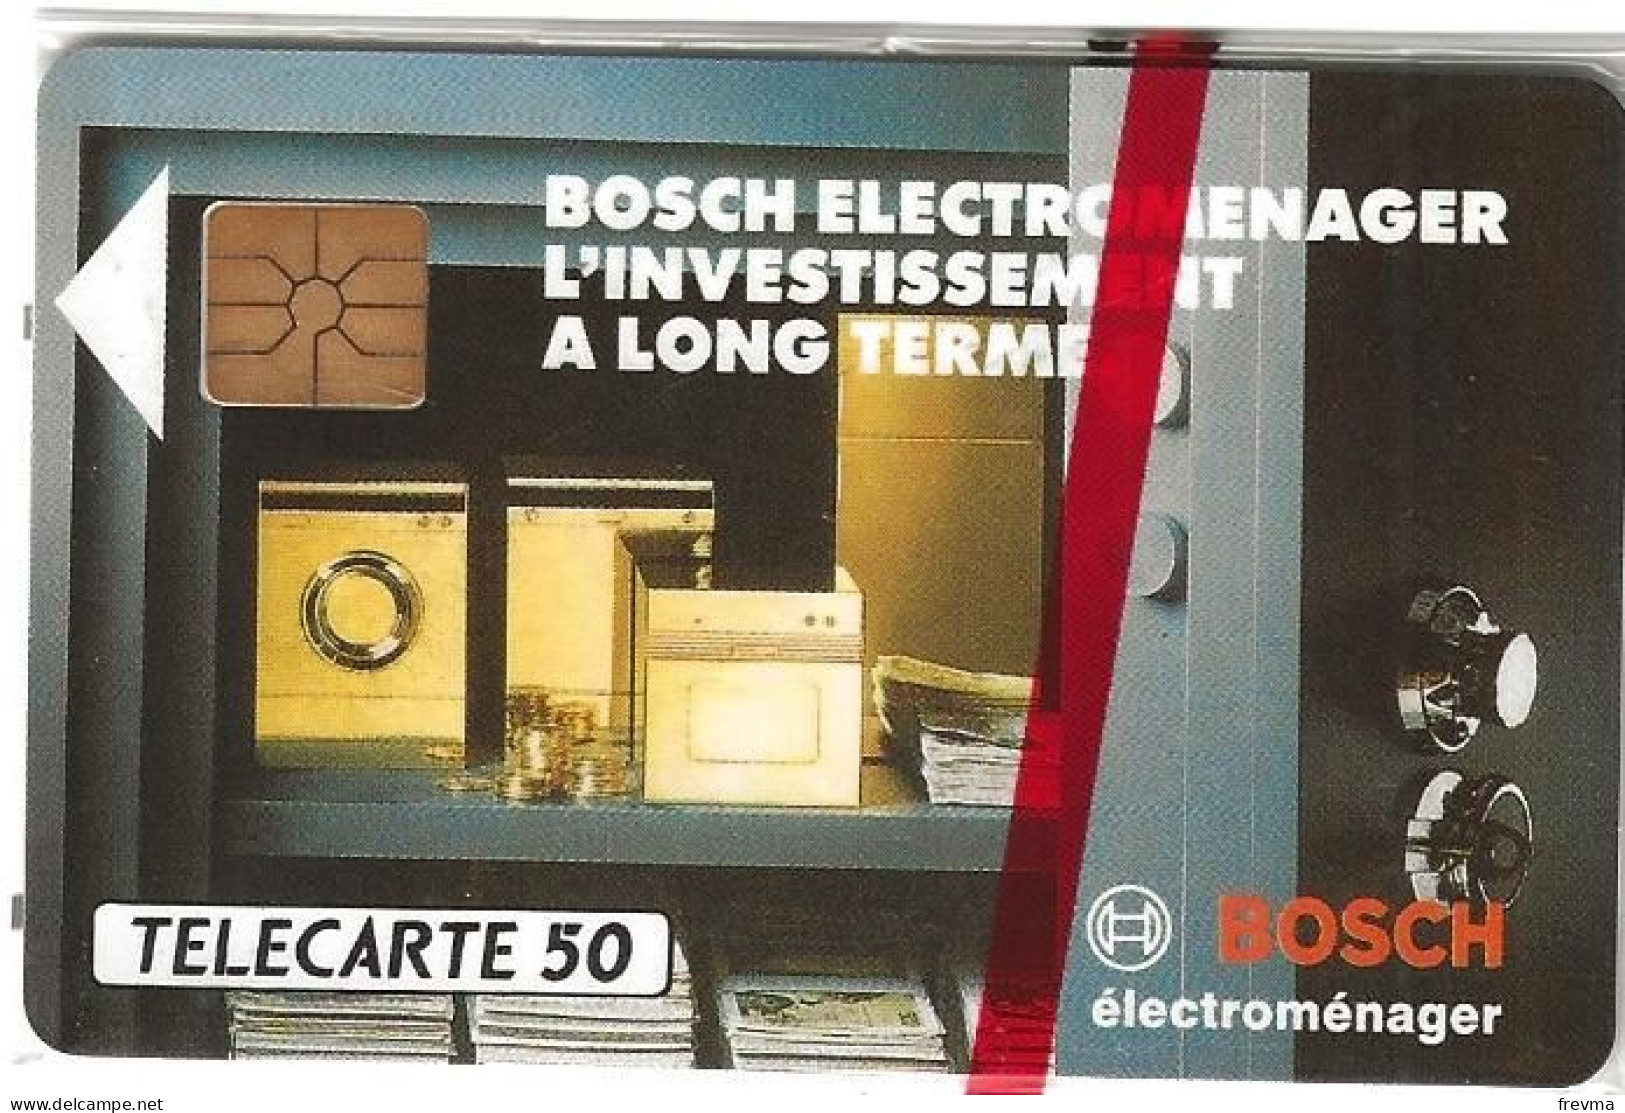 Telecarte E330 Bosch Electromenager 50 Unités NSB GEM - Phonecards: Private Use